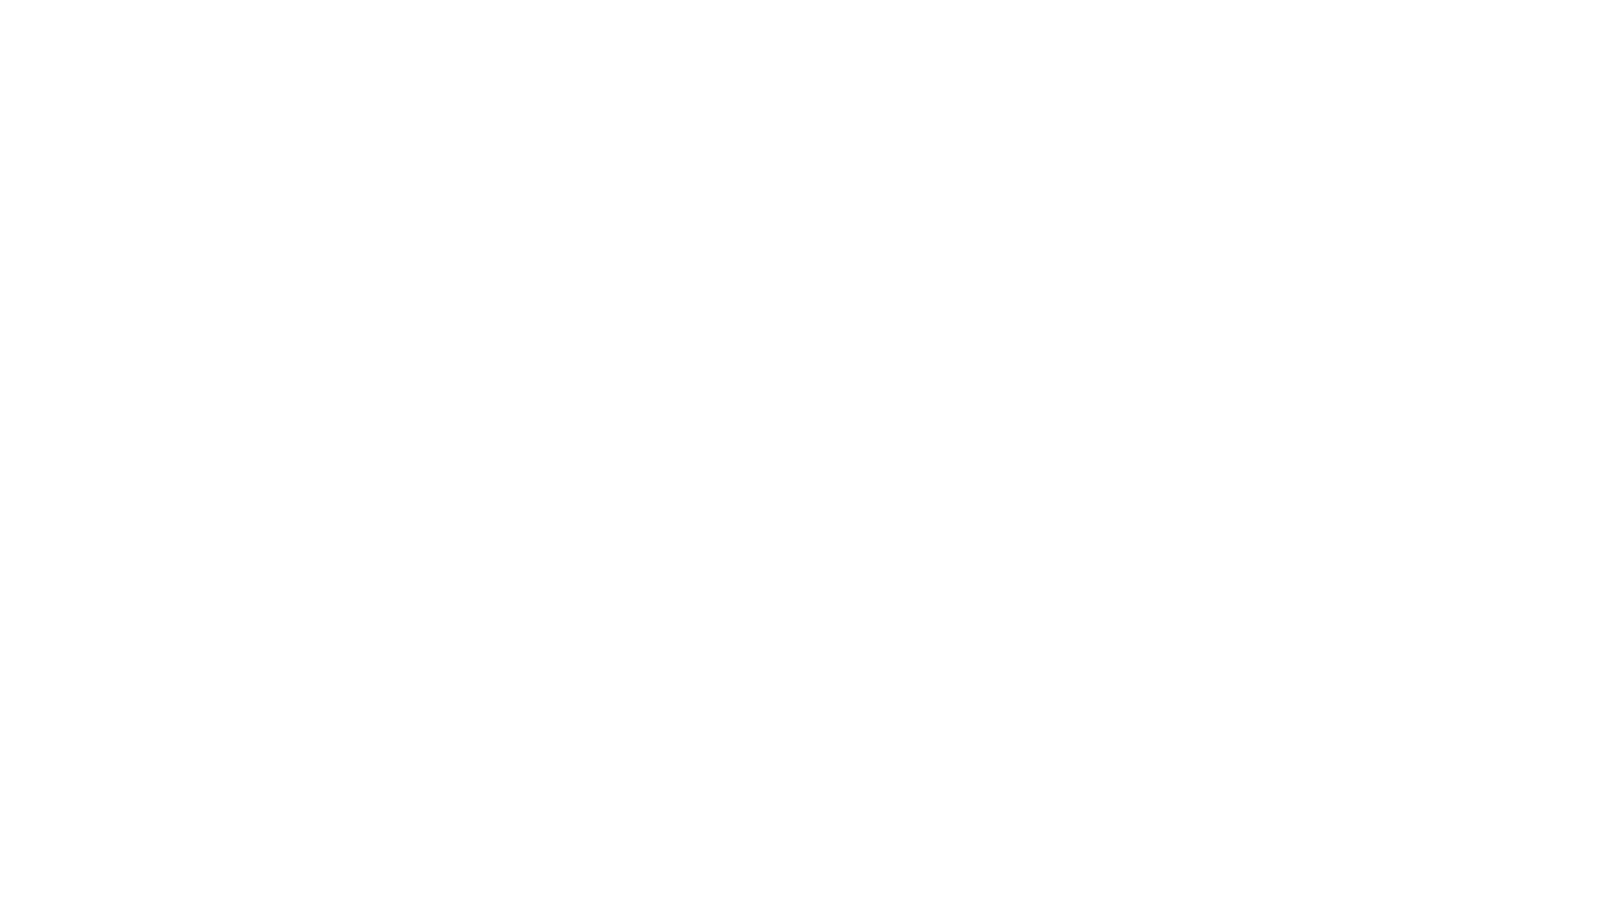 „Computerlove“
ist die detailgetreue Nachbildung des legendären NDW - Klassikers  „Computerliebe“ des Kultduos PASO DOBLE von 1985, neu produziert im modernen Sounddesign der aktuellen Popmusik.
Mit der englischsprachigen Version "Computerlove" inclusive Musikvideo macht die Hamburger Band PASO DOBLE den Step in die internationale Musikszene. Insbesondere für die langjährigen Fans des Duos ist diese Version ein Muss, die den zeitgemäßen Hörgenuss mit dem sympathischen Schuss Nostalgie bietet. Als kleines Bonbon dieser Produktion erscheint dieser Track zeitgleich auch in deutscher Sprache für alle Liebhaber des vollen Klanges!